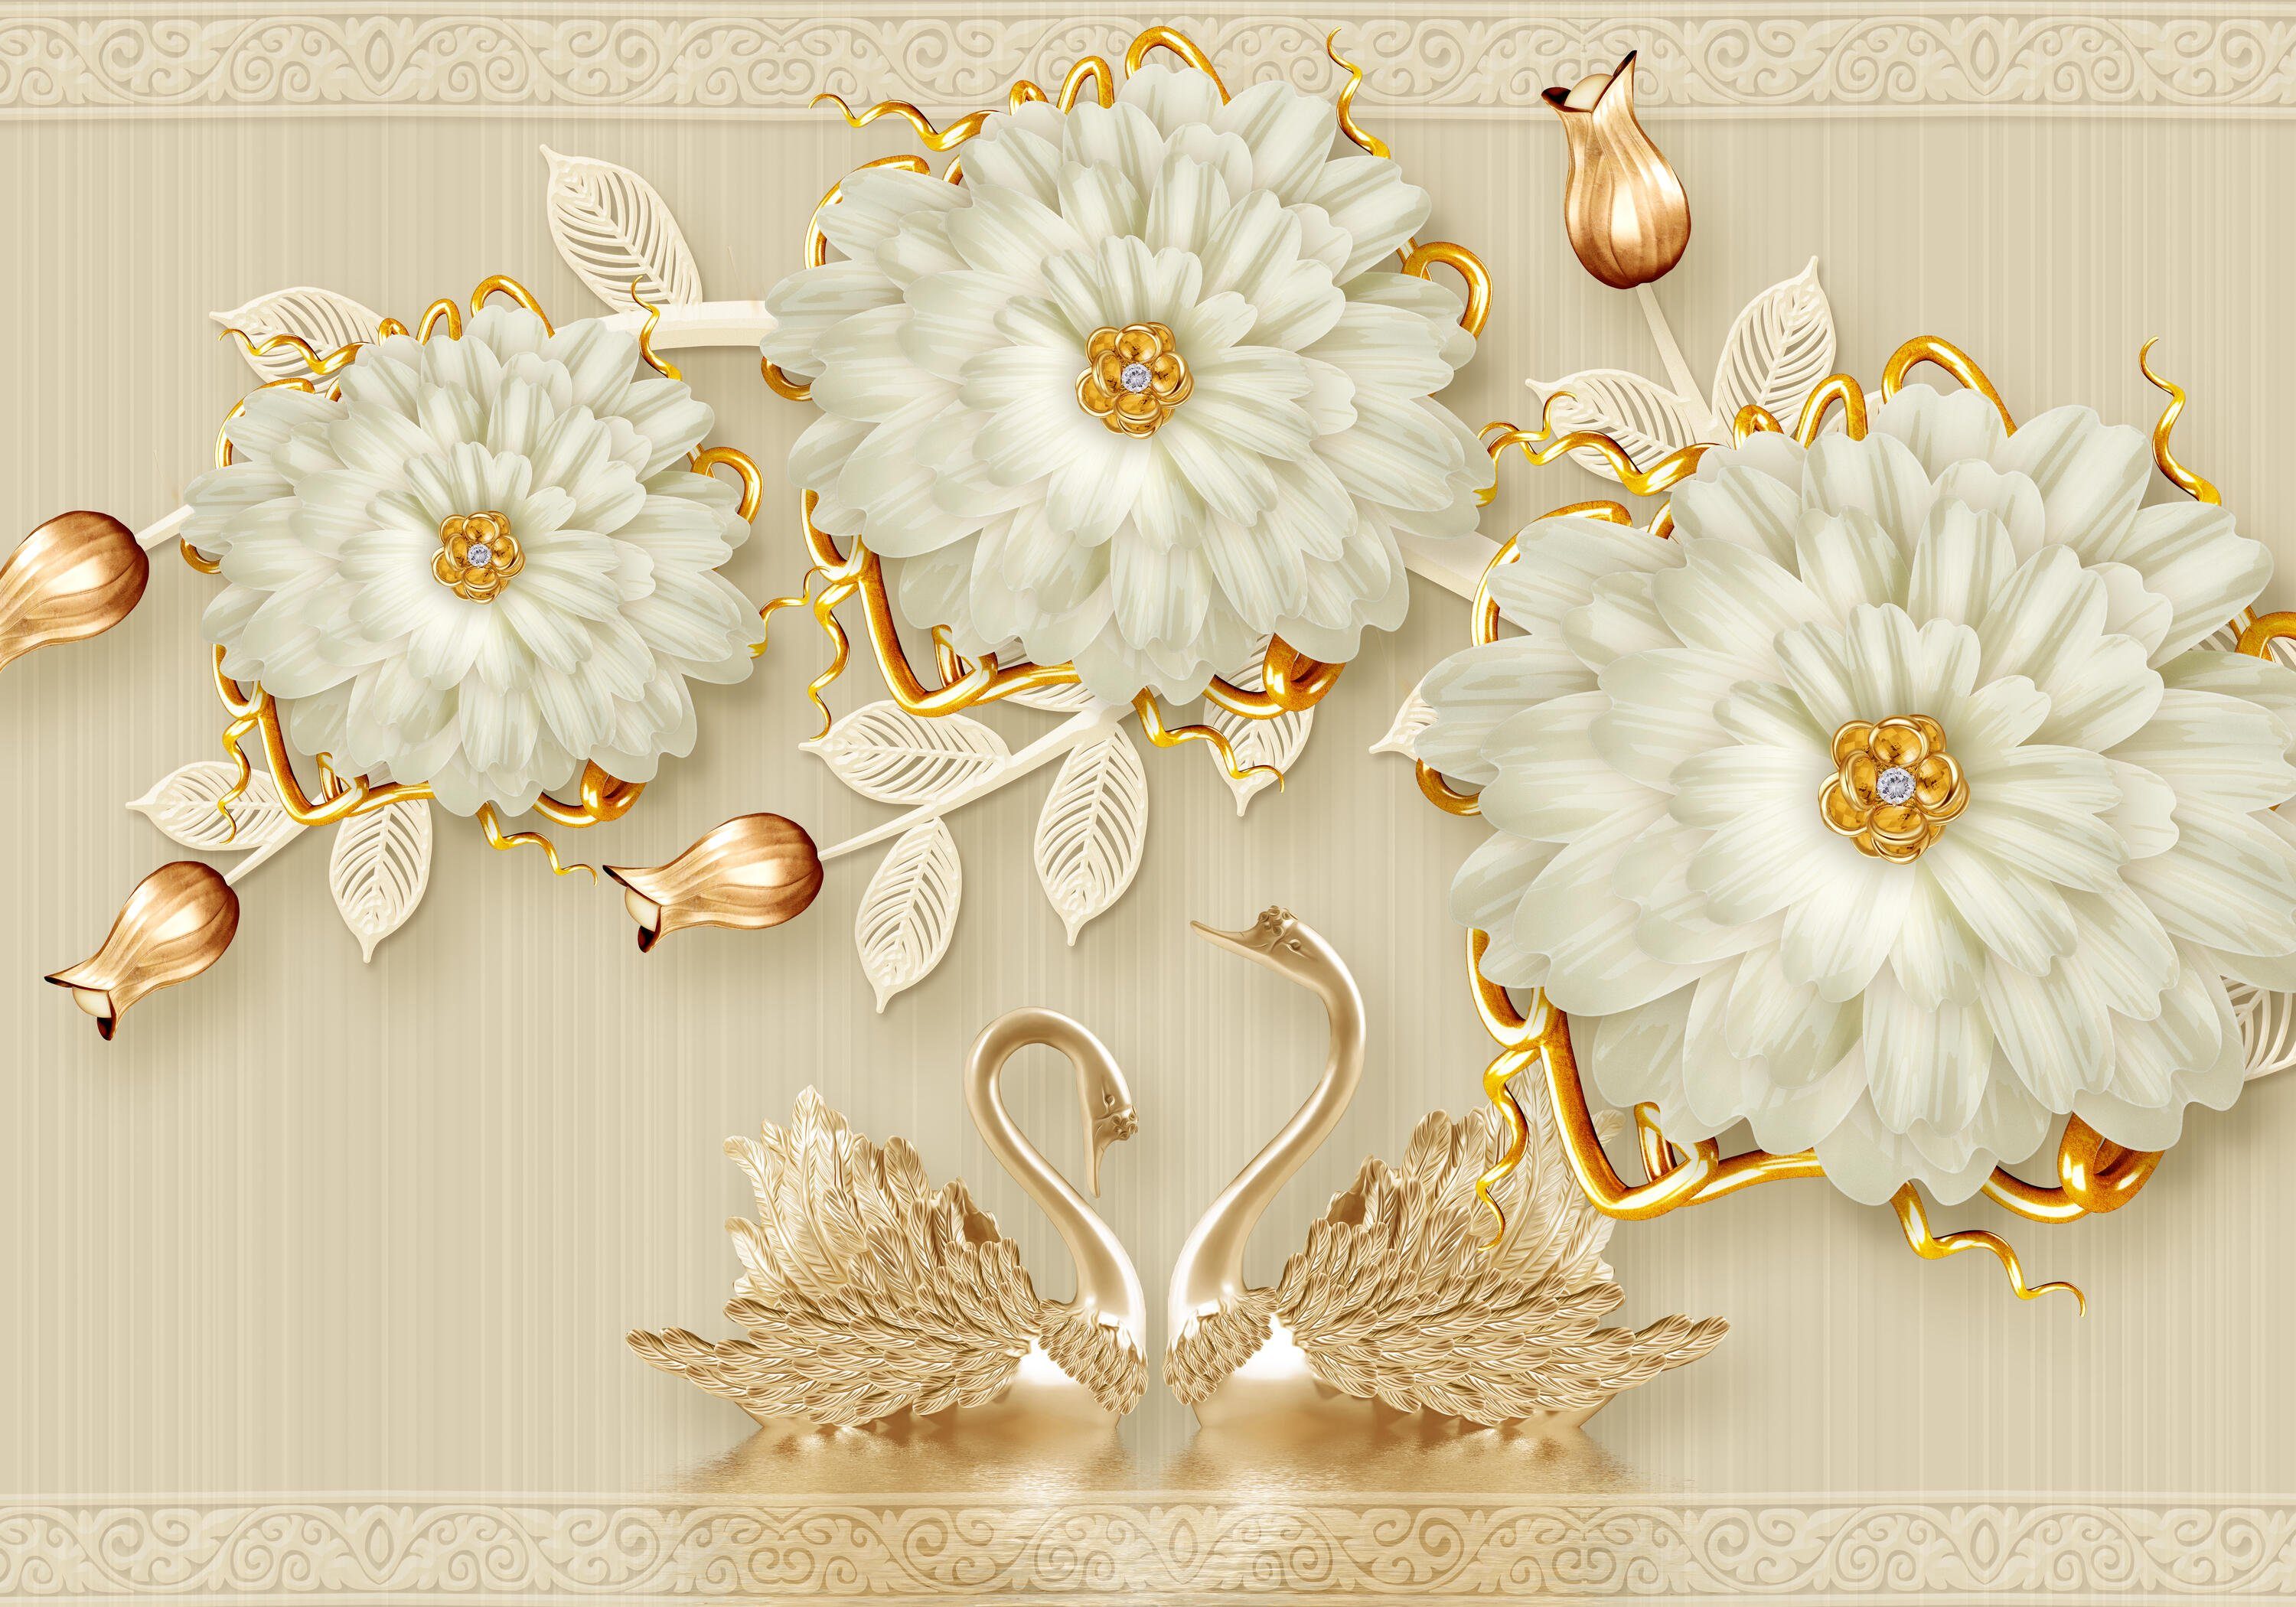 wandmotiv24 Fototapete Blüten gold Vliestapete matt, glatt, Ornamente Wandtapete, weiß, Motivtapete